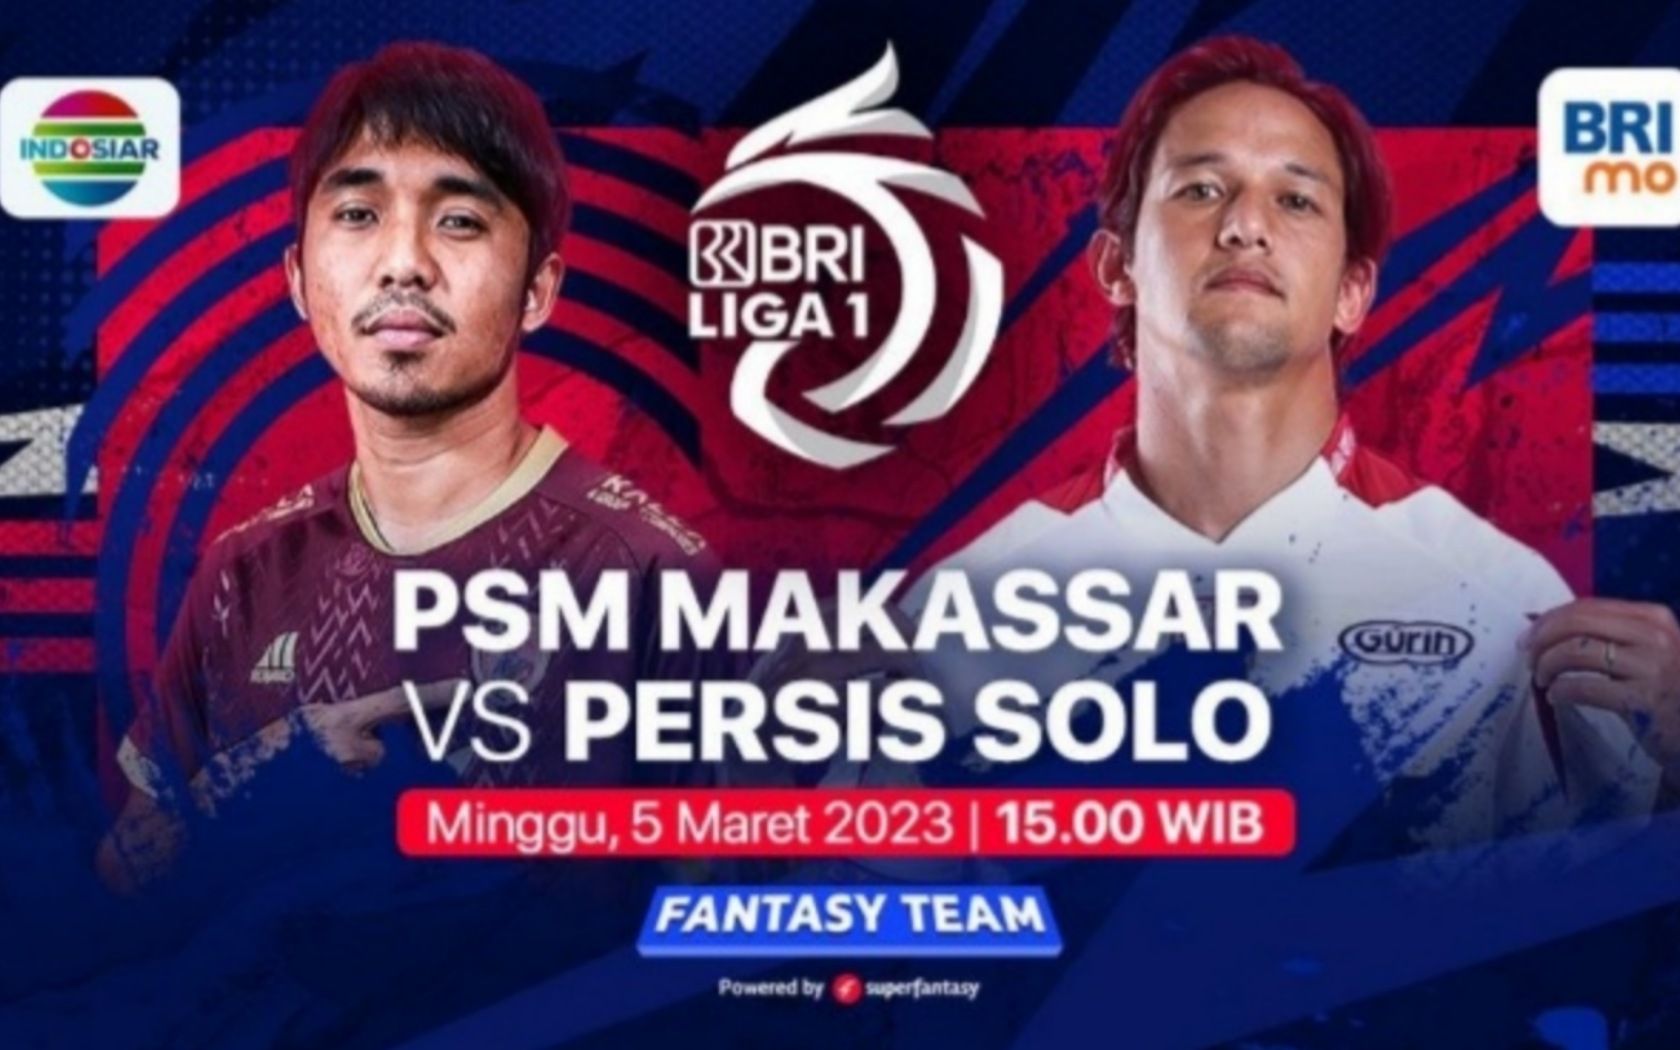 Prediksi formasi susunan pemain PSM Makassar vs Persis solo di pertandingan BRI Liga 1 hari ini